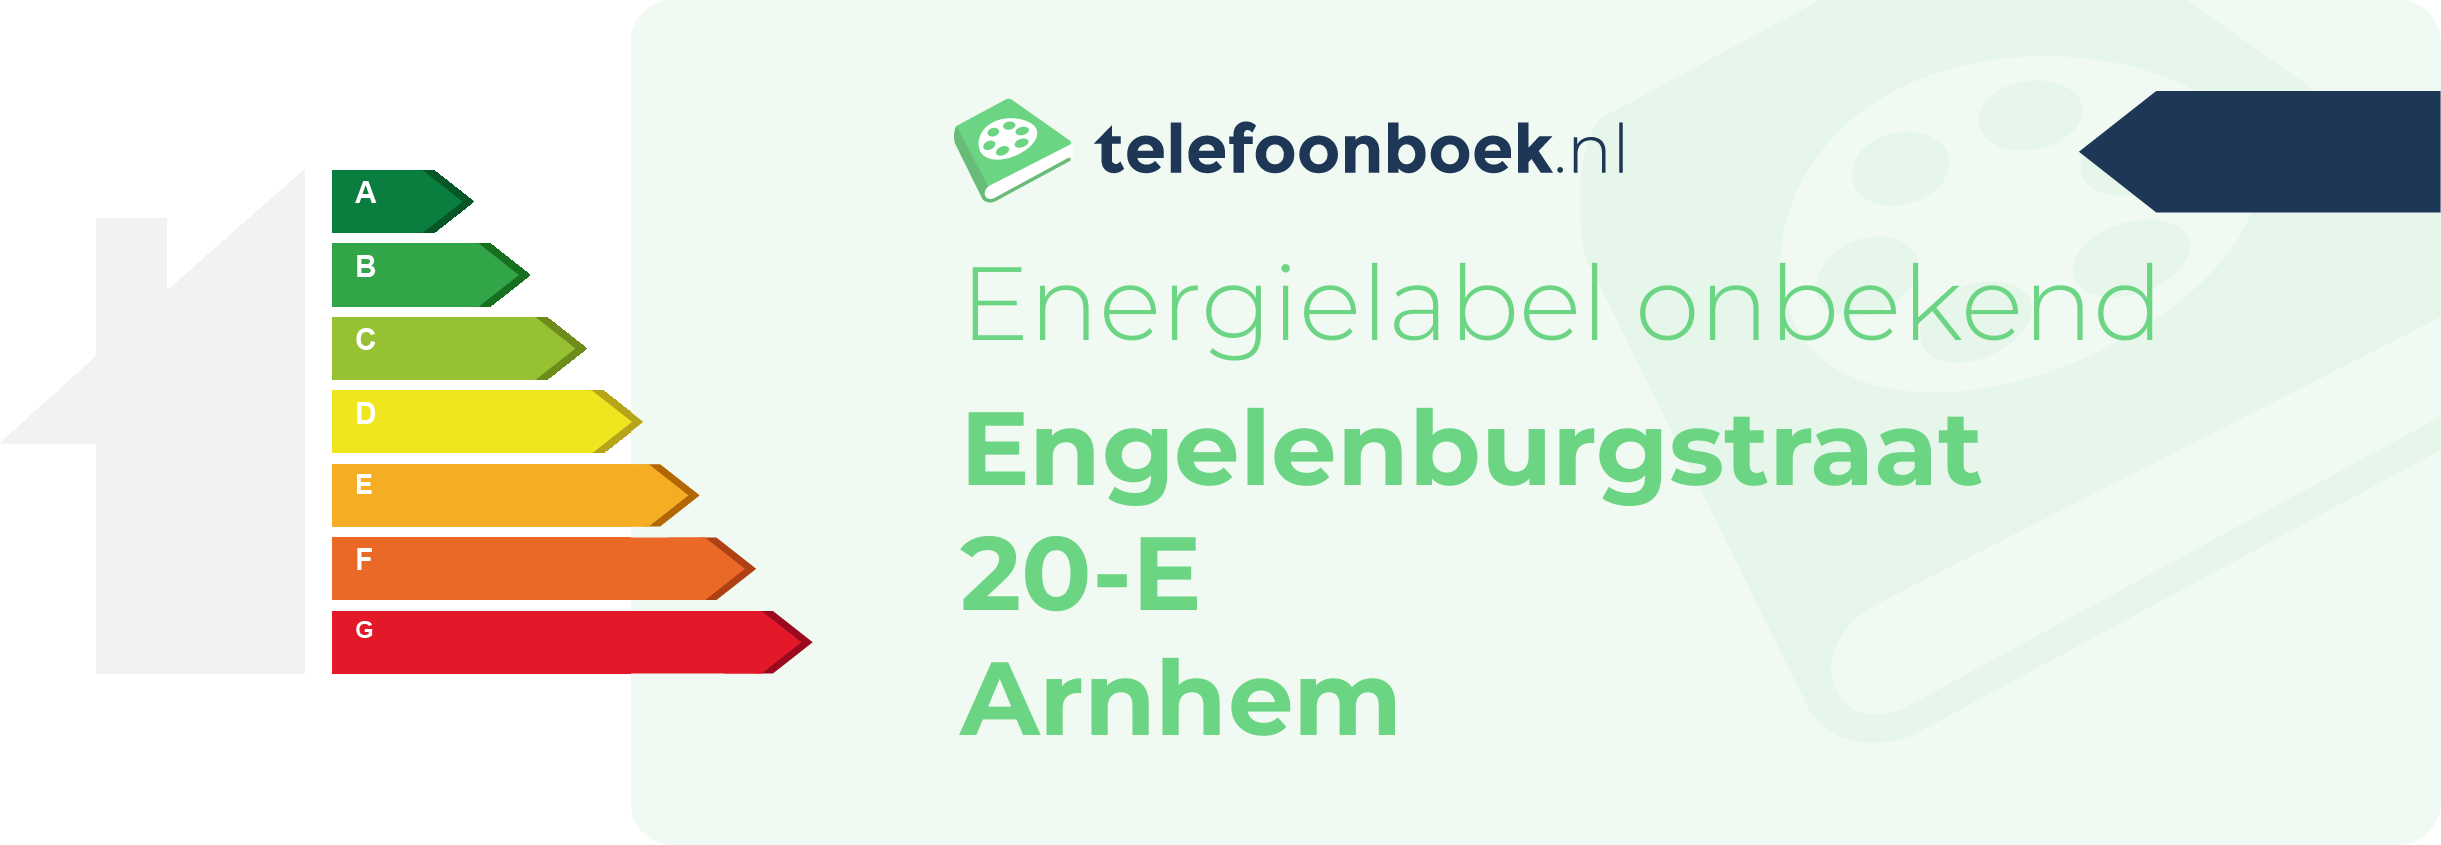 Energielabel Engelenburgstraat 20-E Arnhem